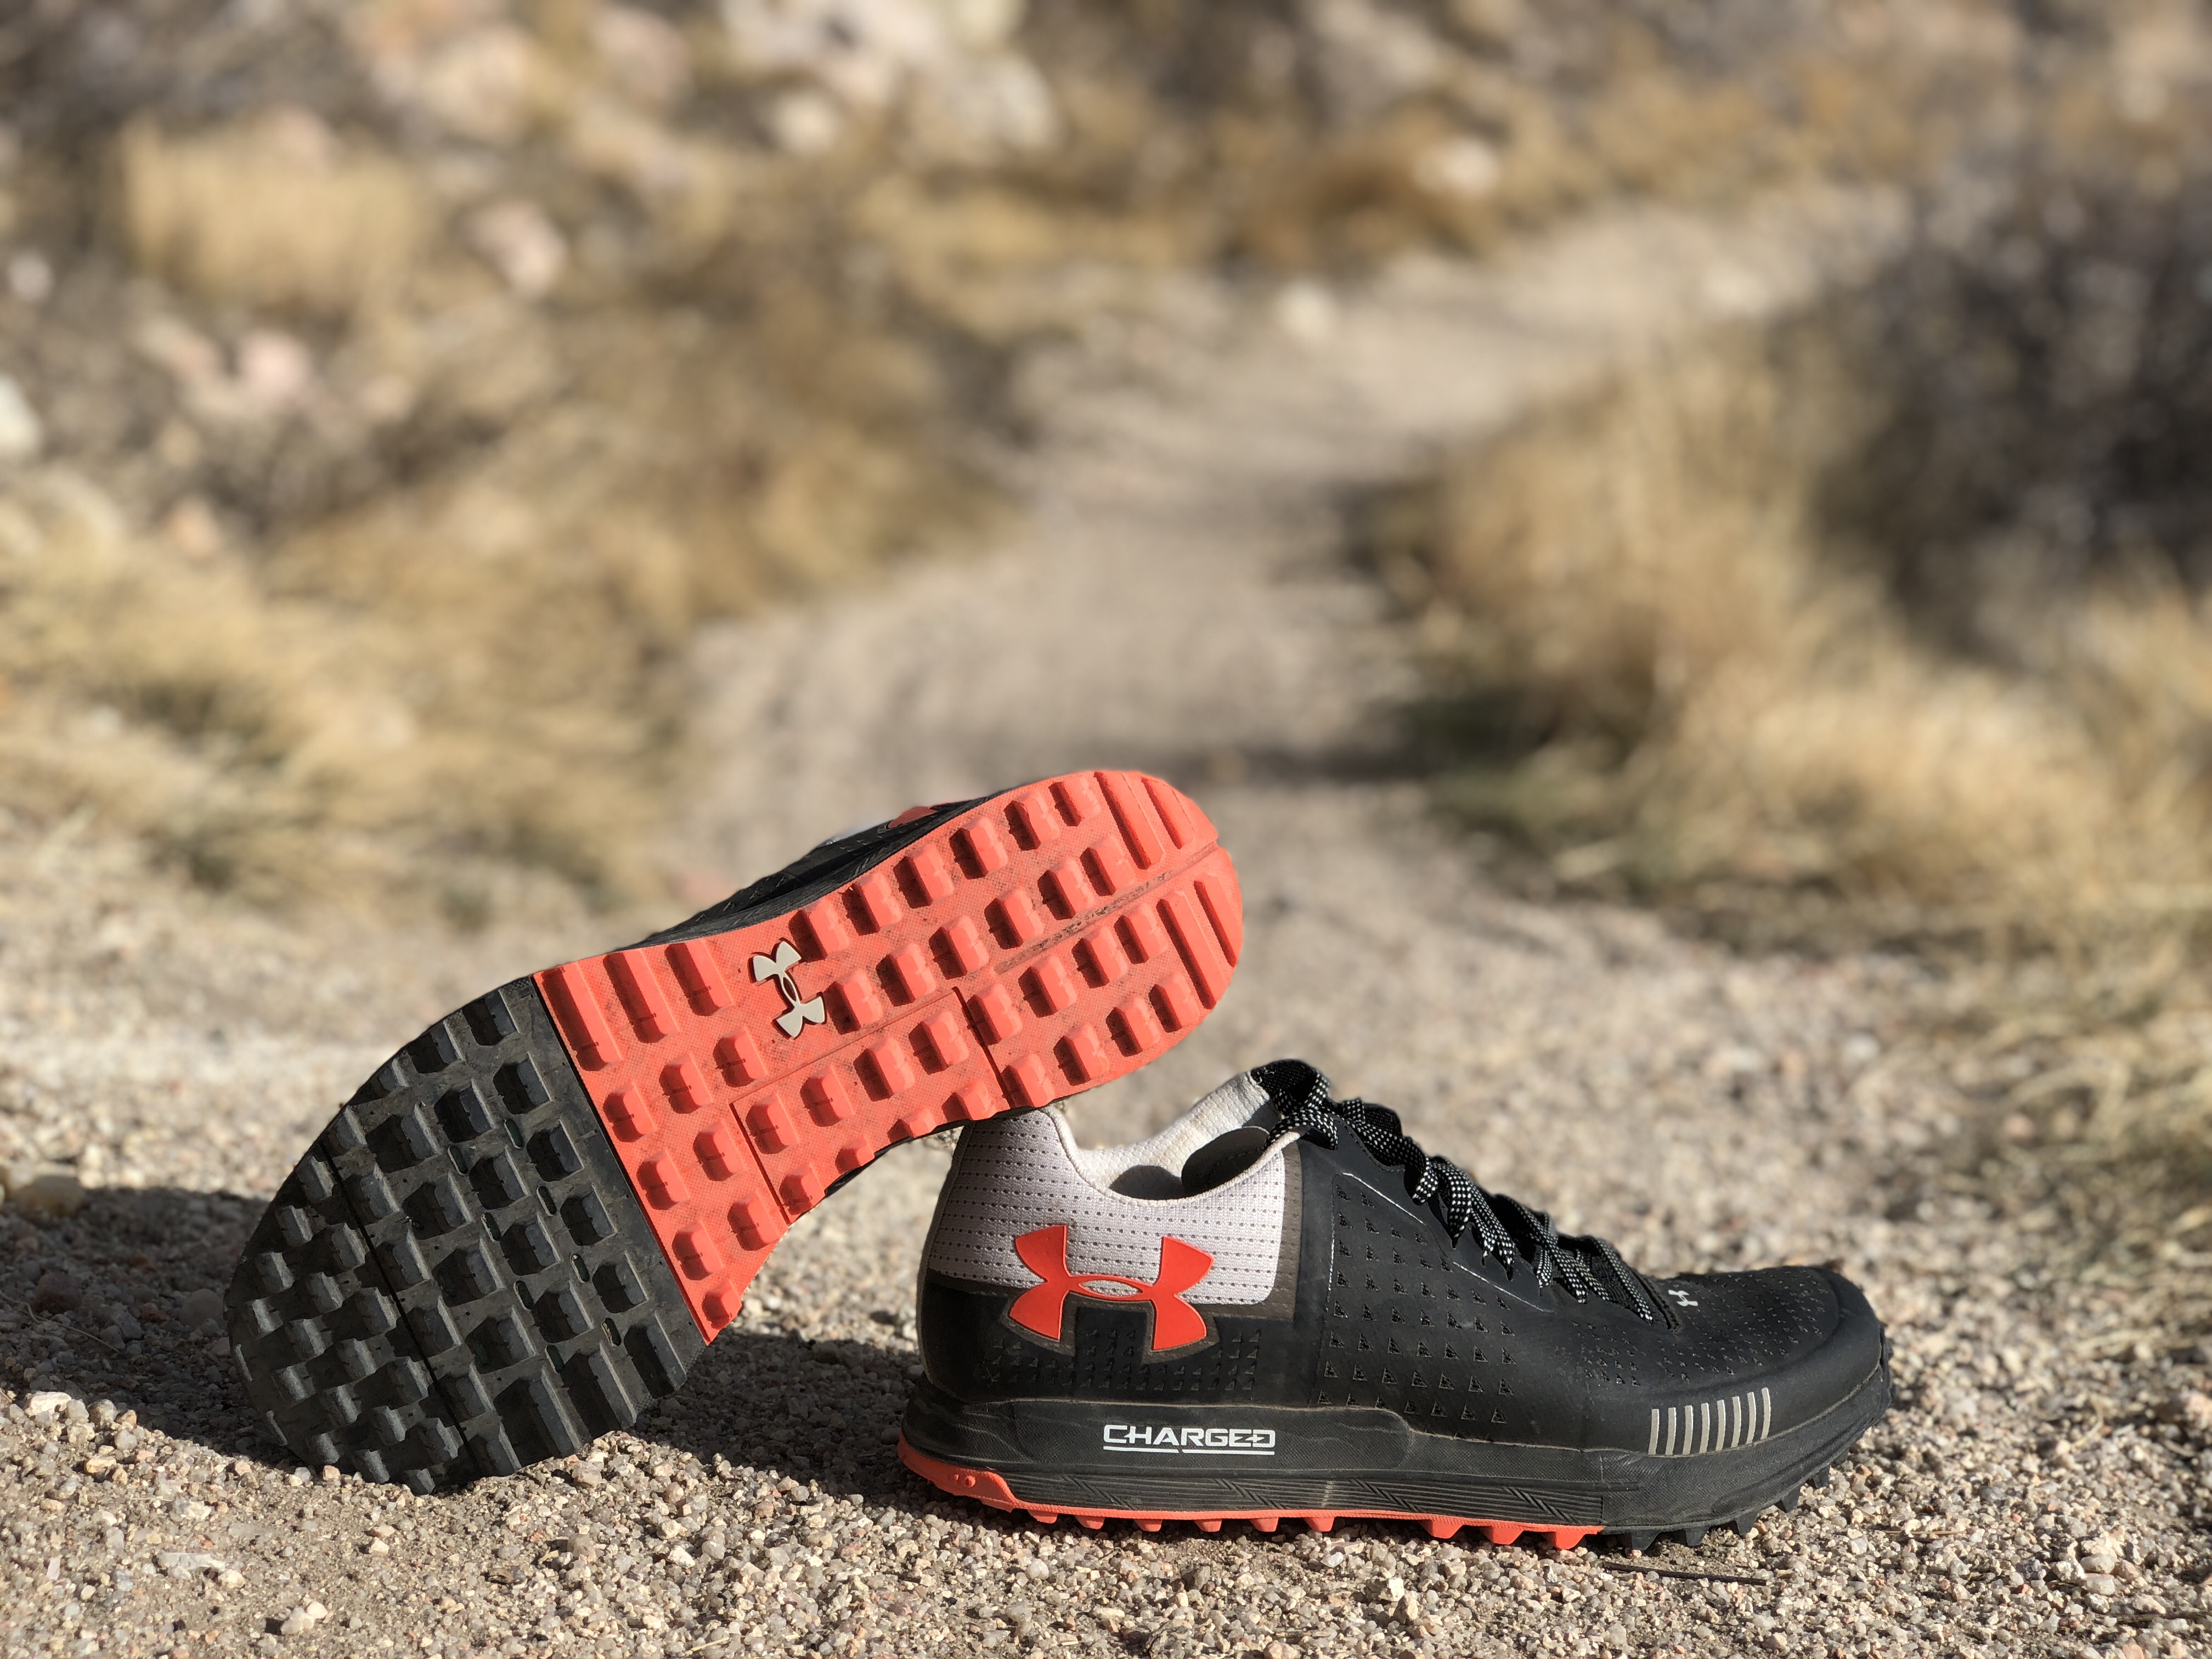 De trato fácil explique fluctuar Review: Under Armour Horizon RTT Men's Trail Running Shoes - The Coloradist